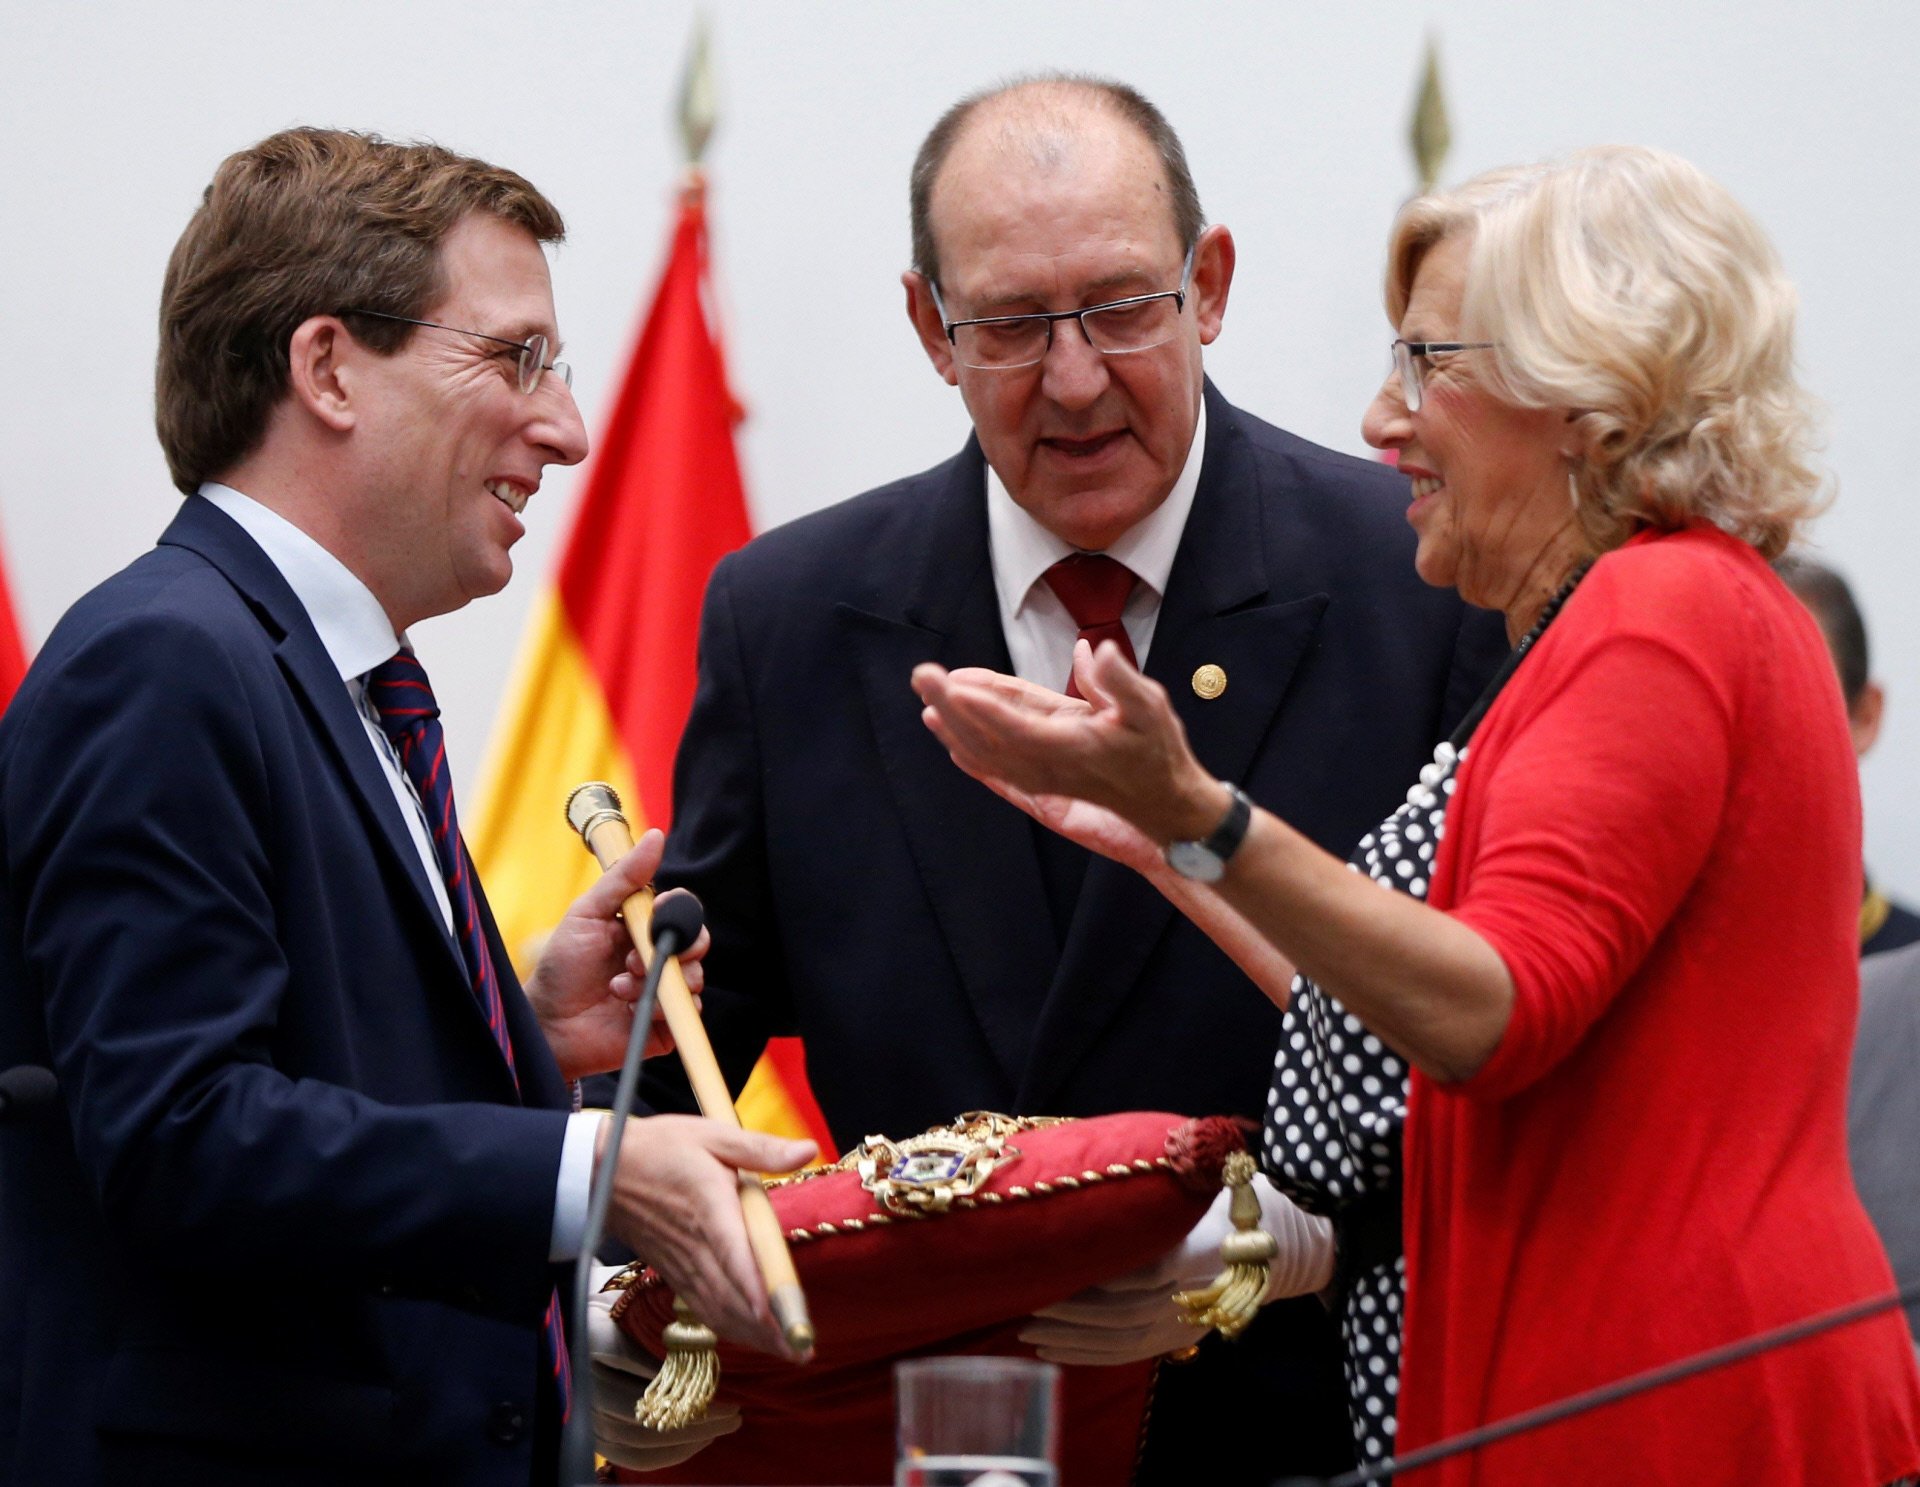 El nuevo alcalde de Madrid, a Griso: "Carmena me dijo que era un poco gilipollas"